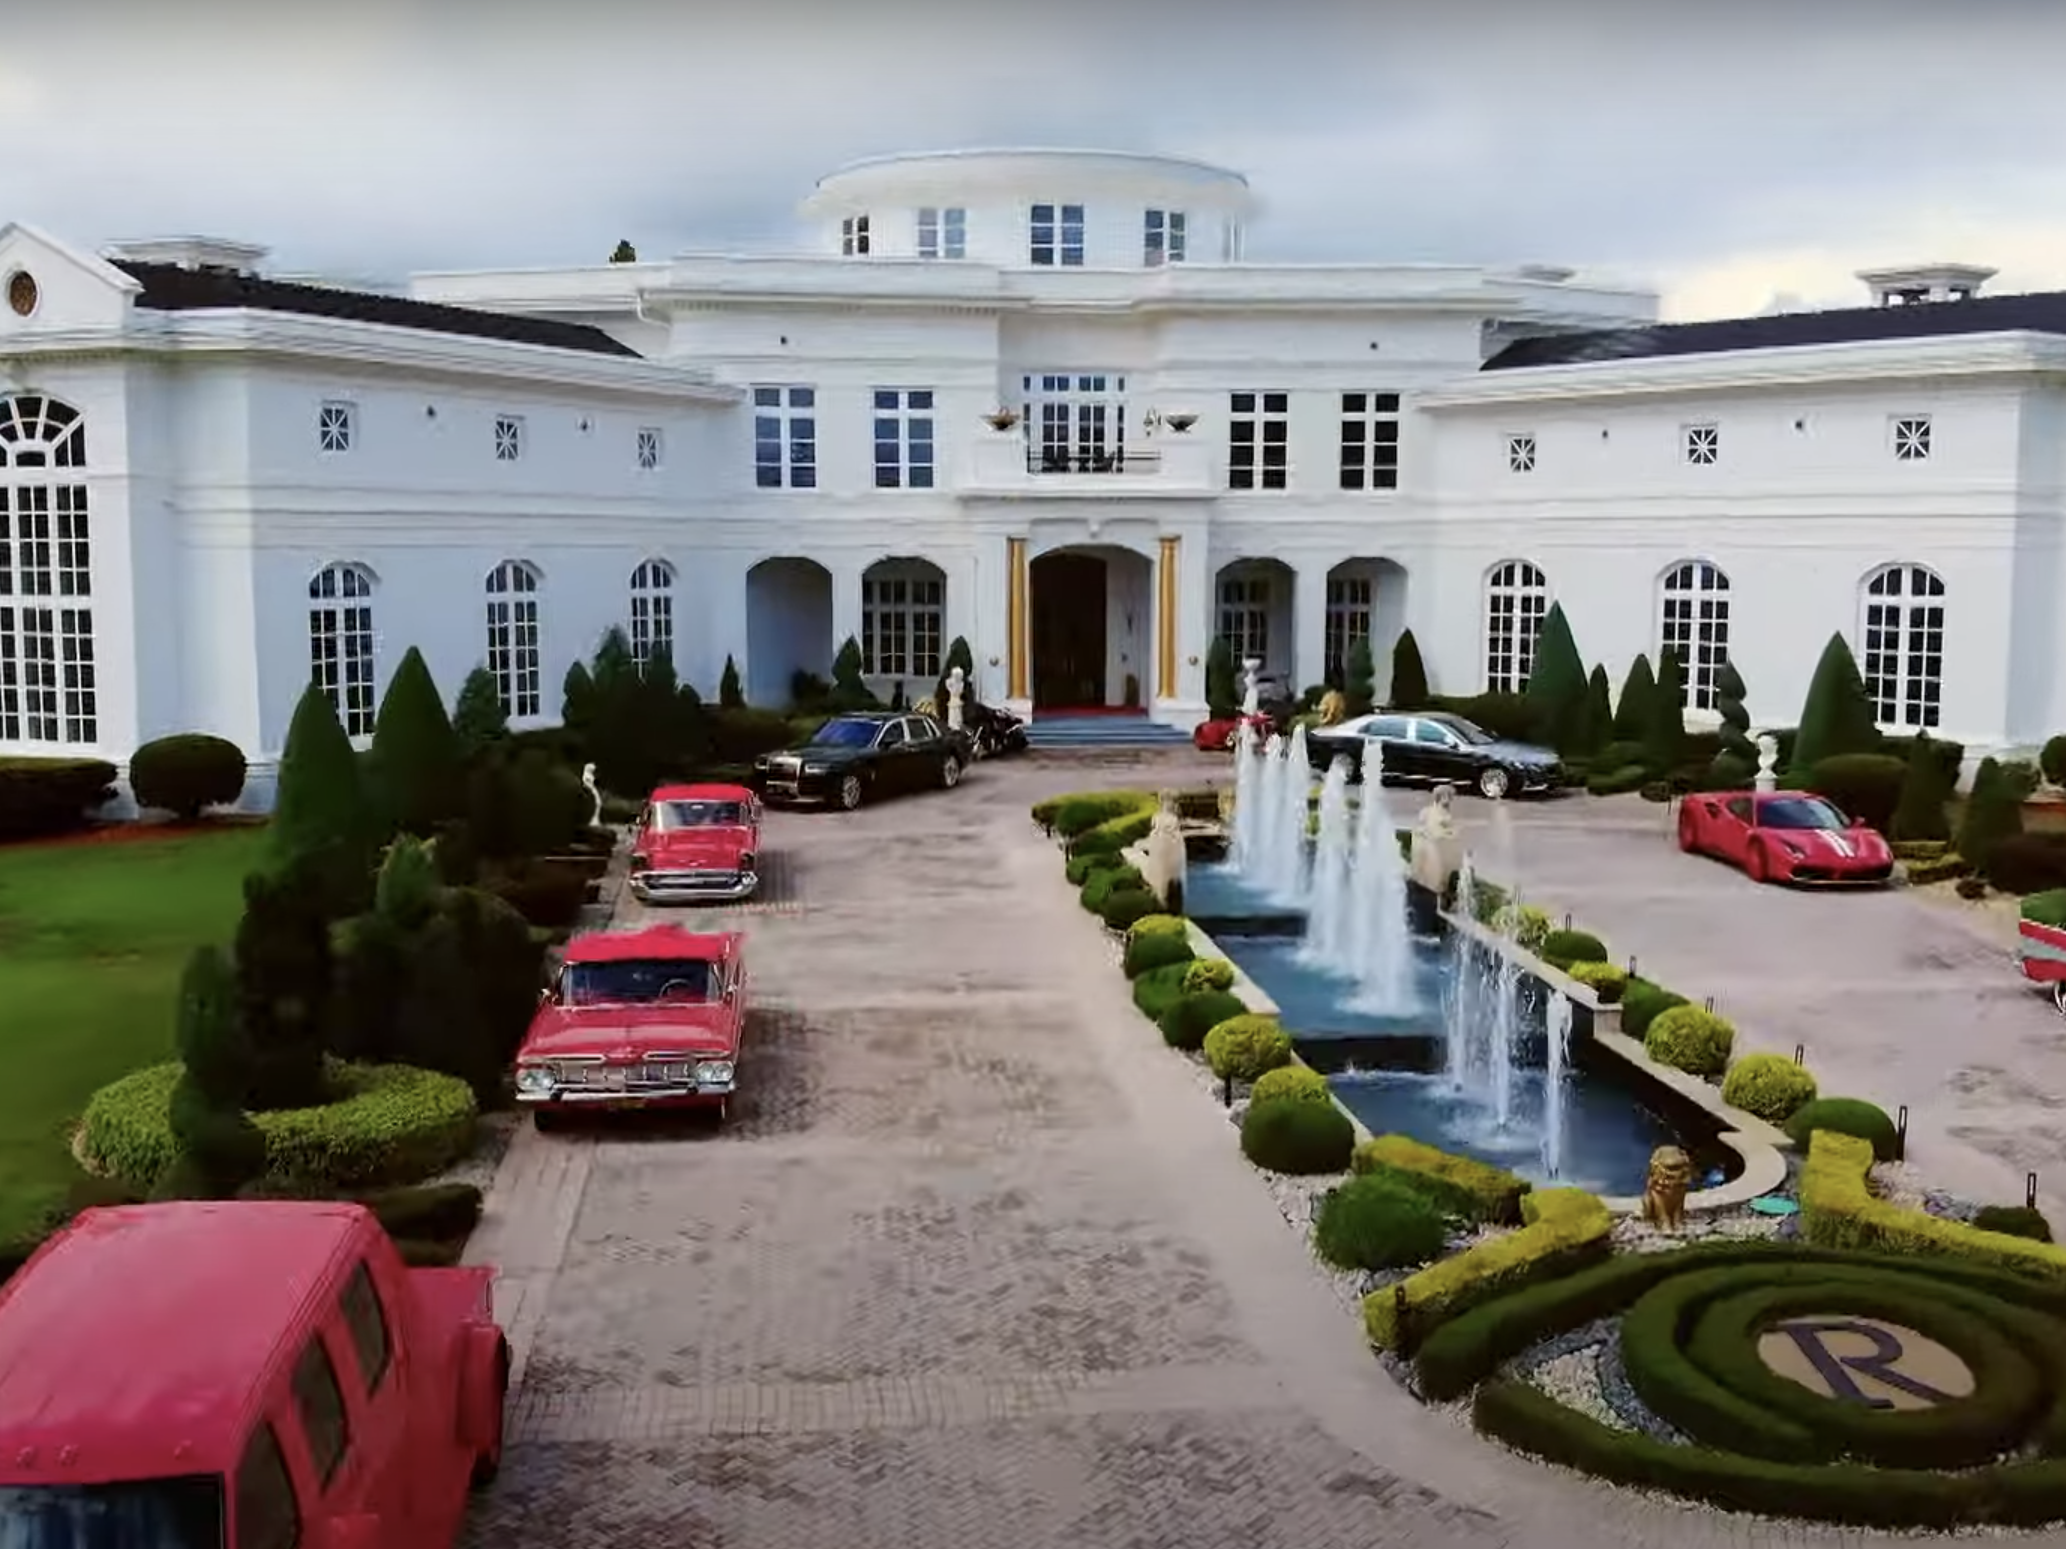 Celebrity mansion showed in MTV Cribs teaser